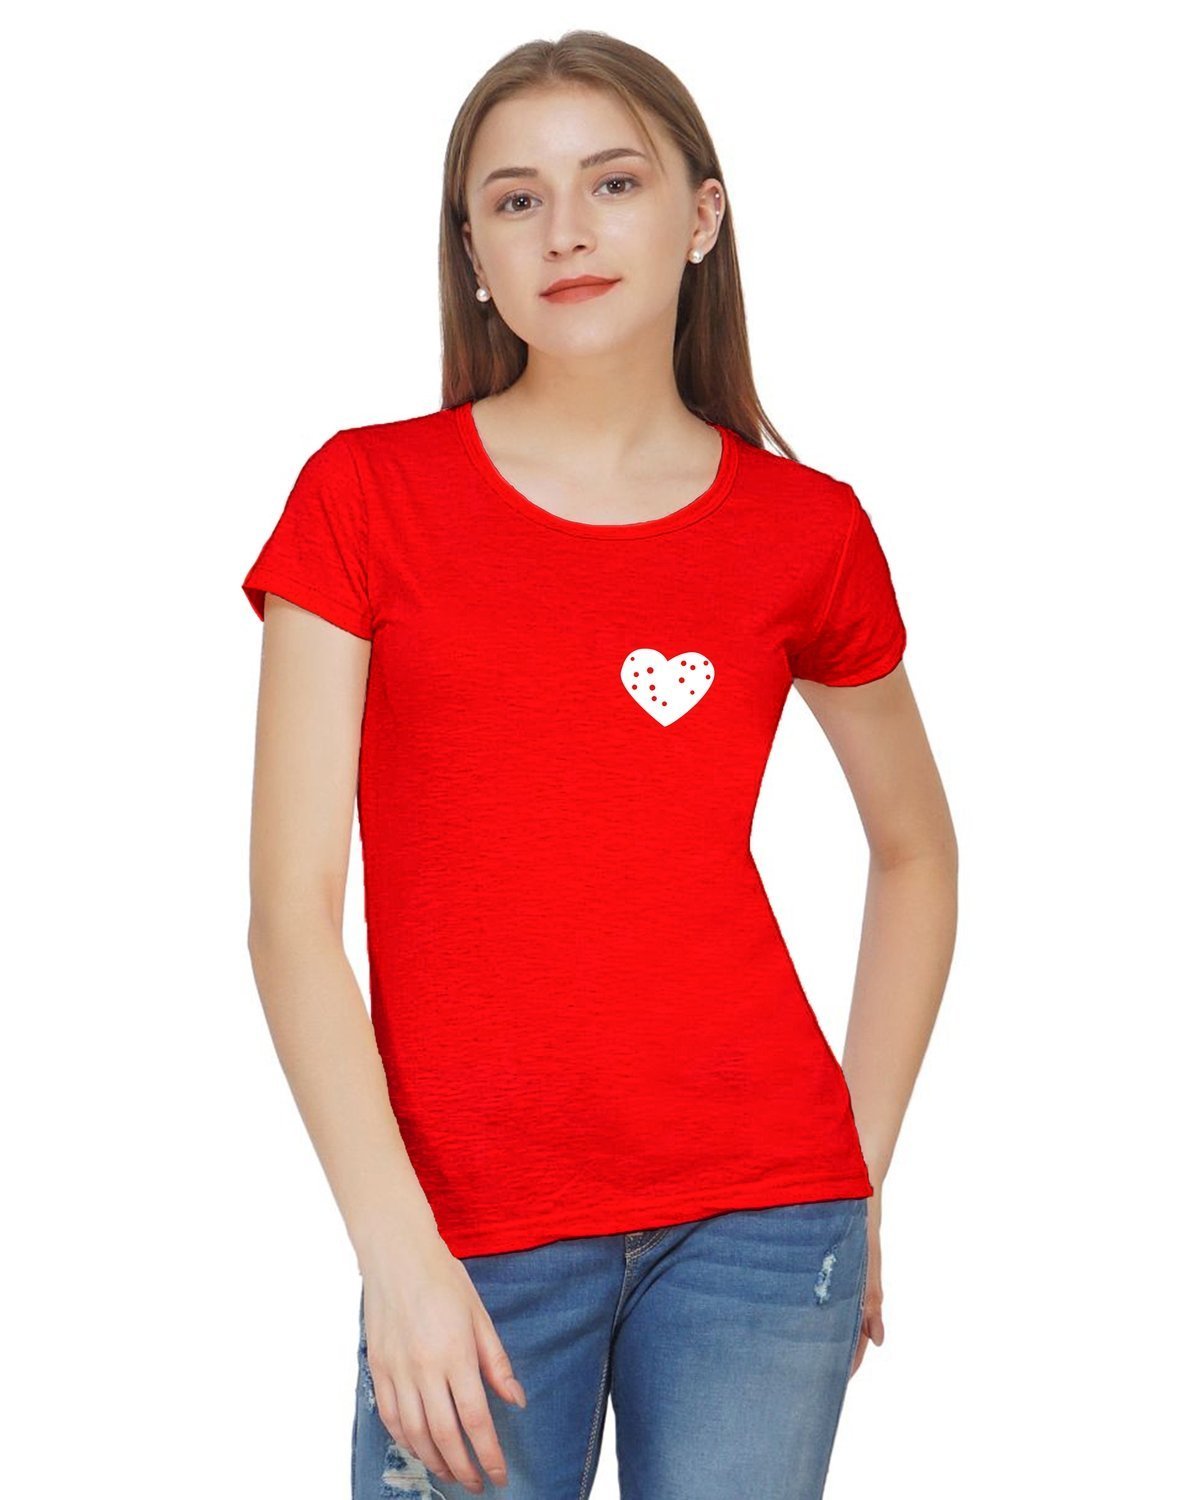 Cute Little Heart Printed T-shirt for Women